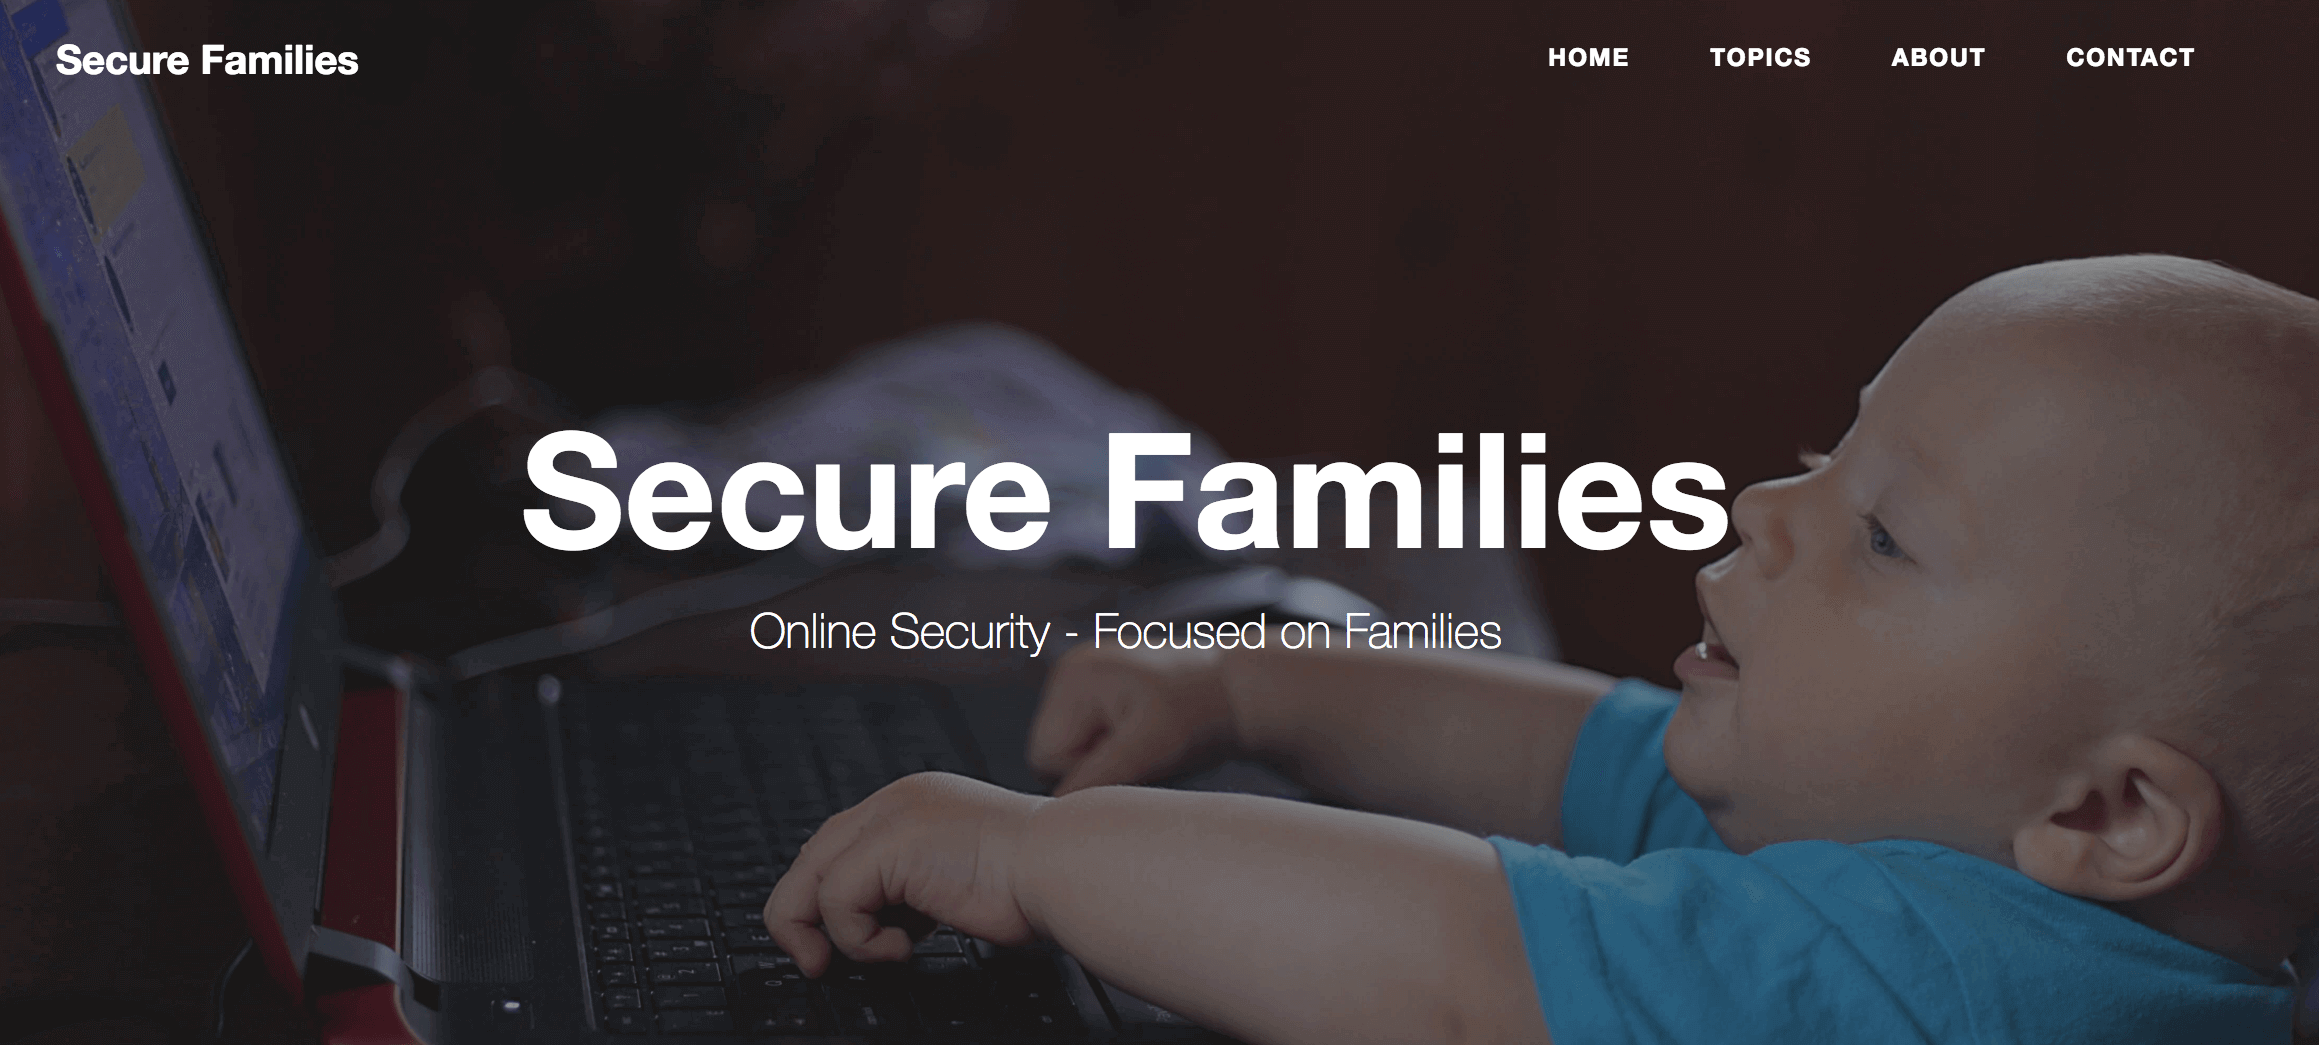 SecureFamilies.org